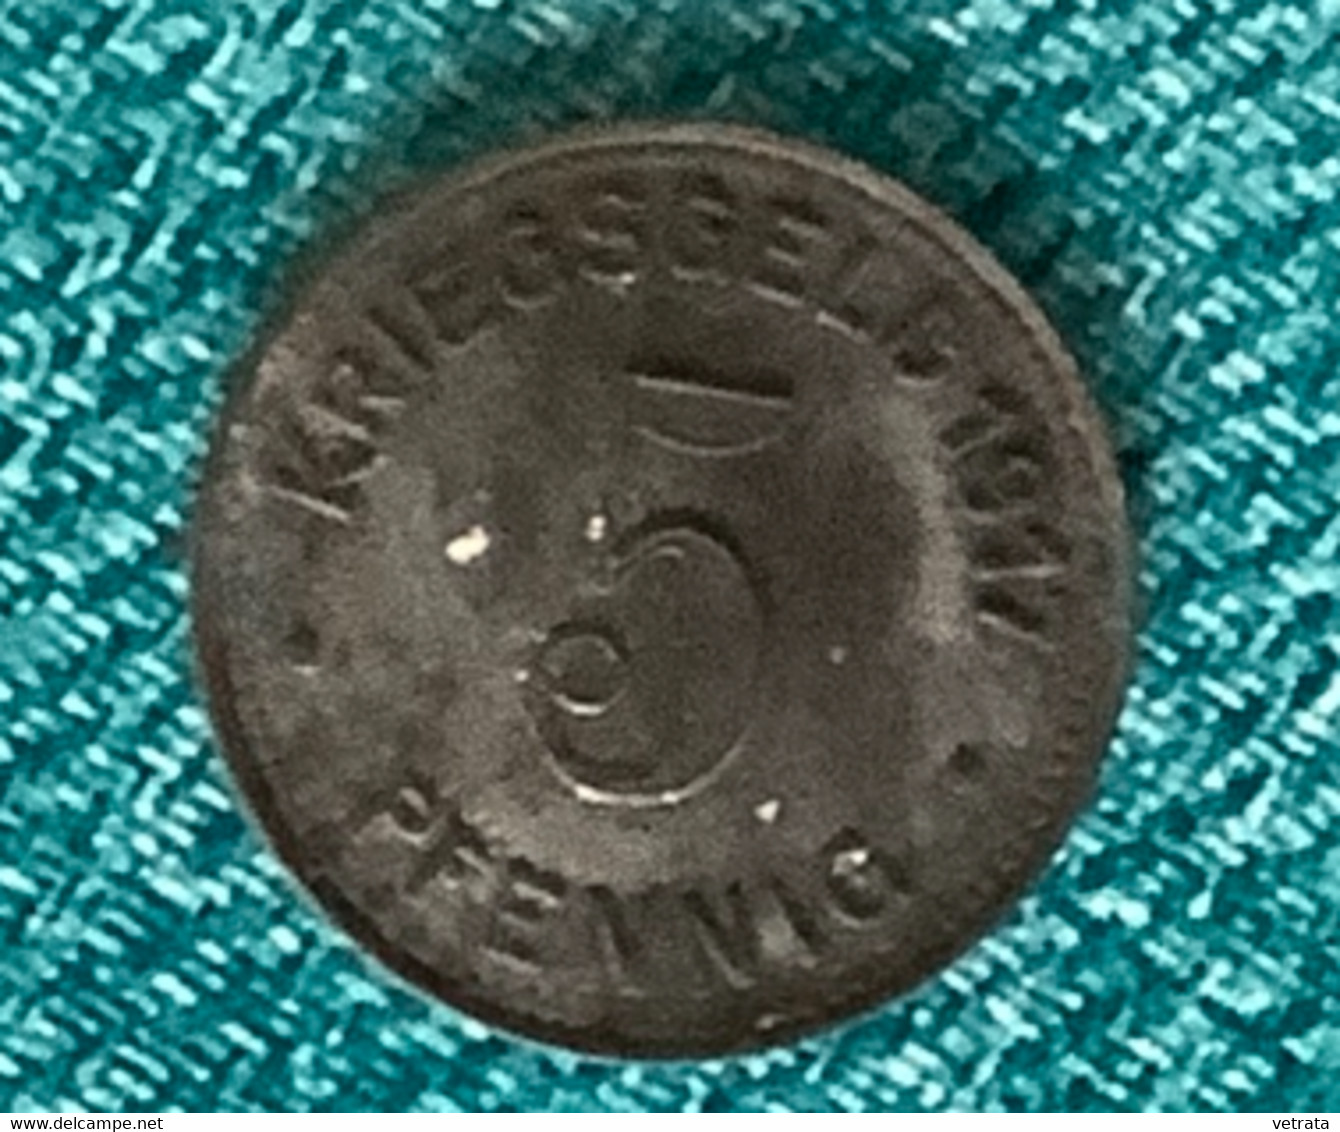 Monnaie De Guerre Allemande : Kriegsgeld 1917 (5 Pfenning) (noircie) - 5 Pfennig